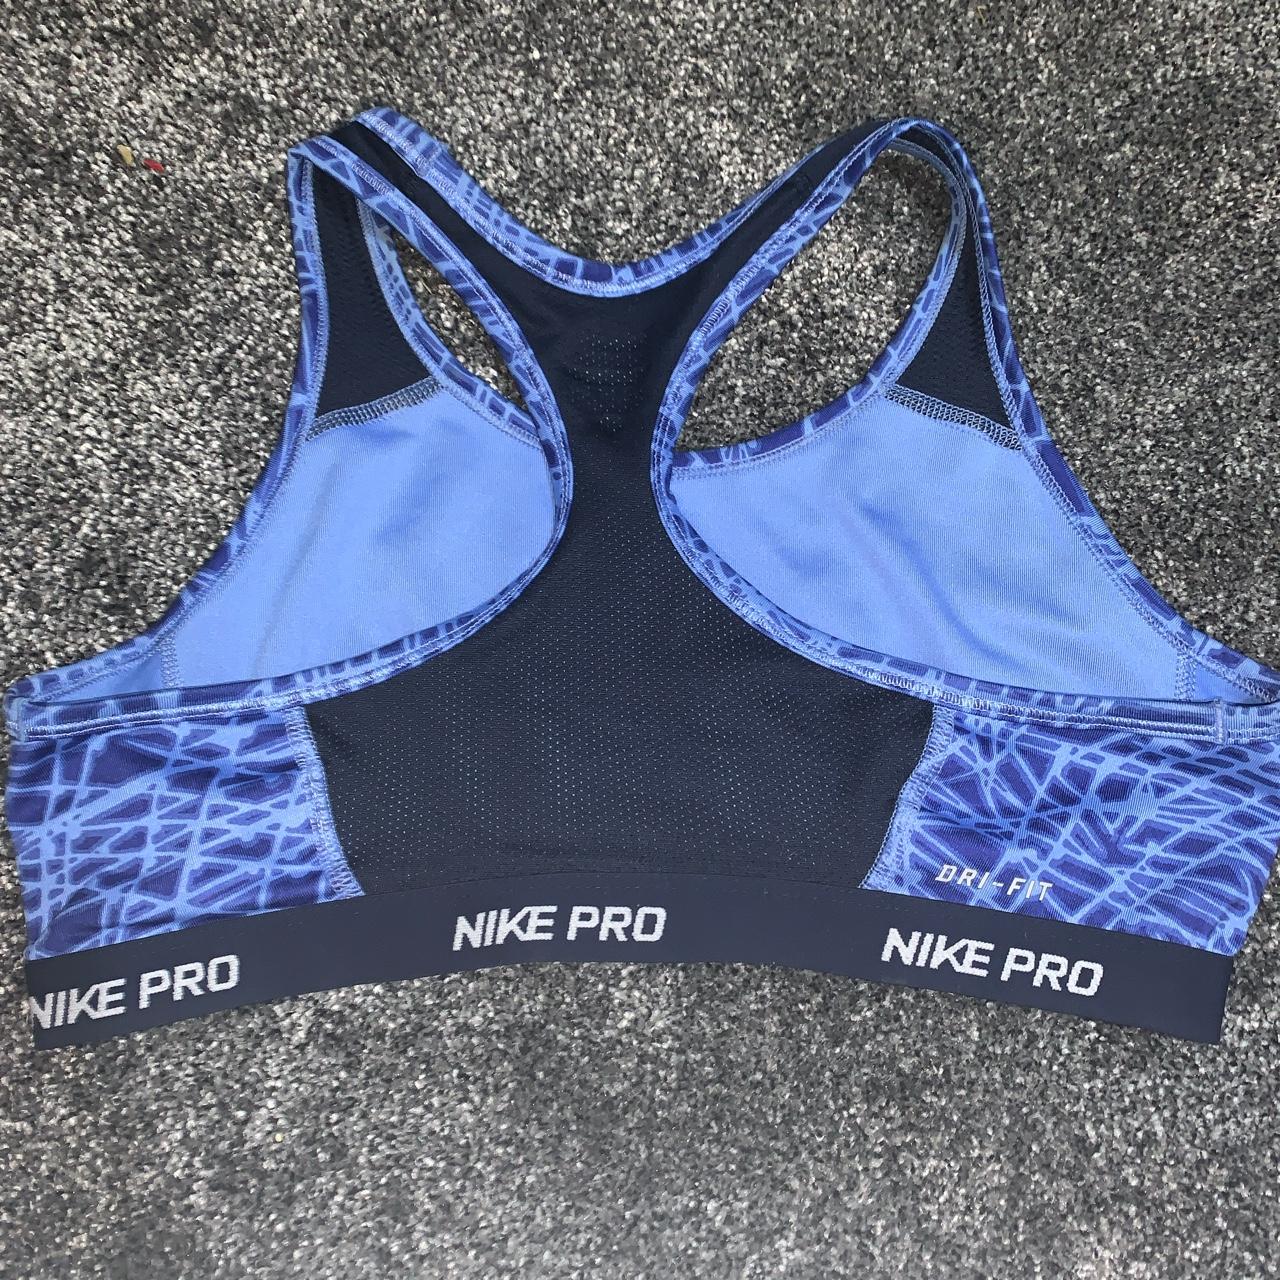 Nike Pro Dri-Fit sports bra Black and blue print - Depop